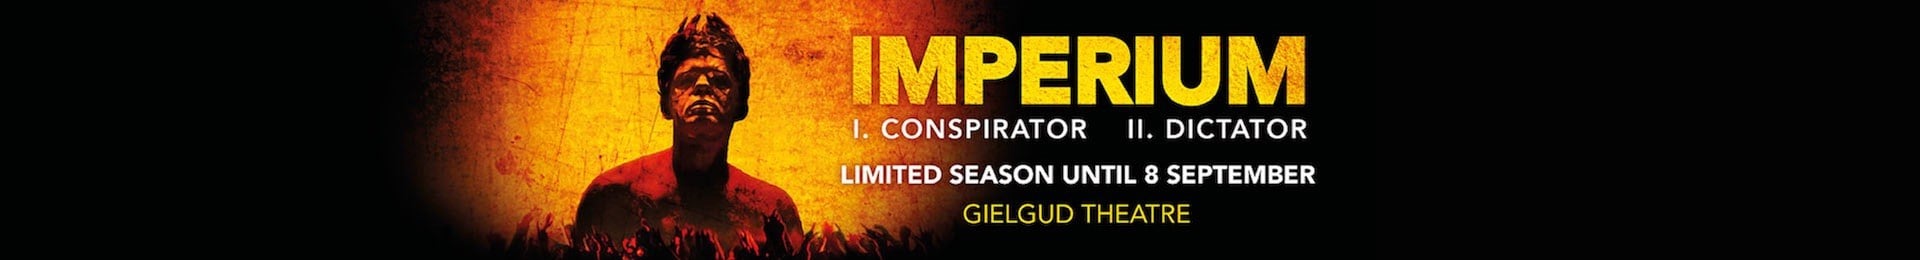 Imperium I: Conspirator banner image